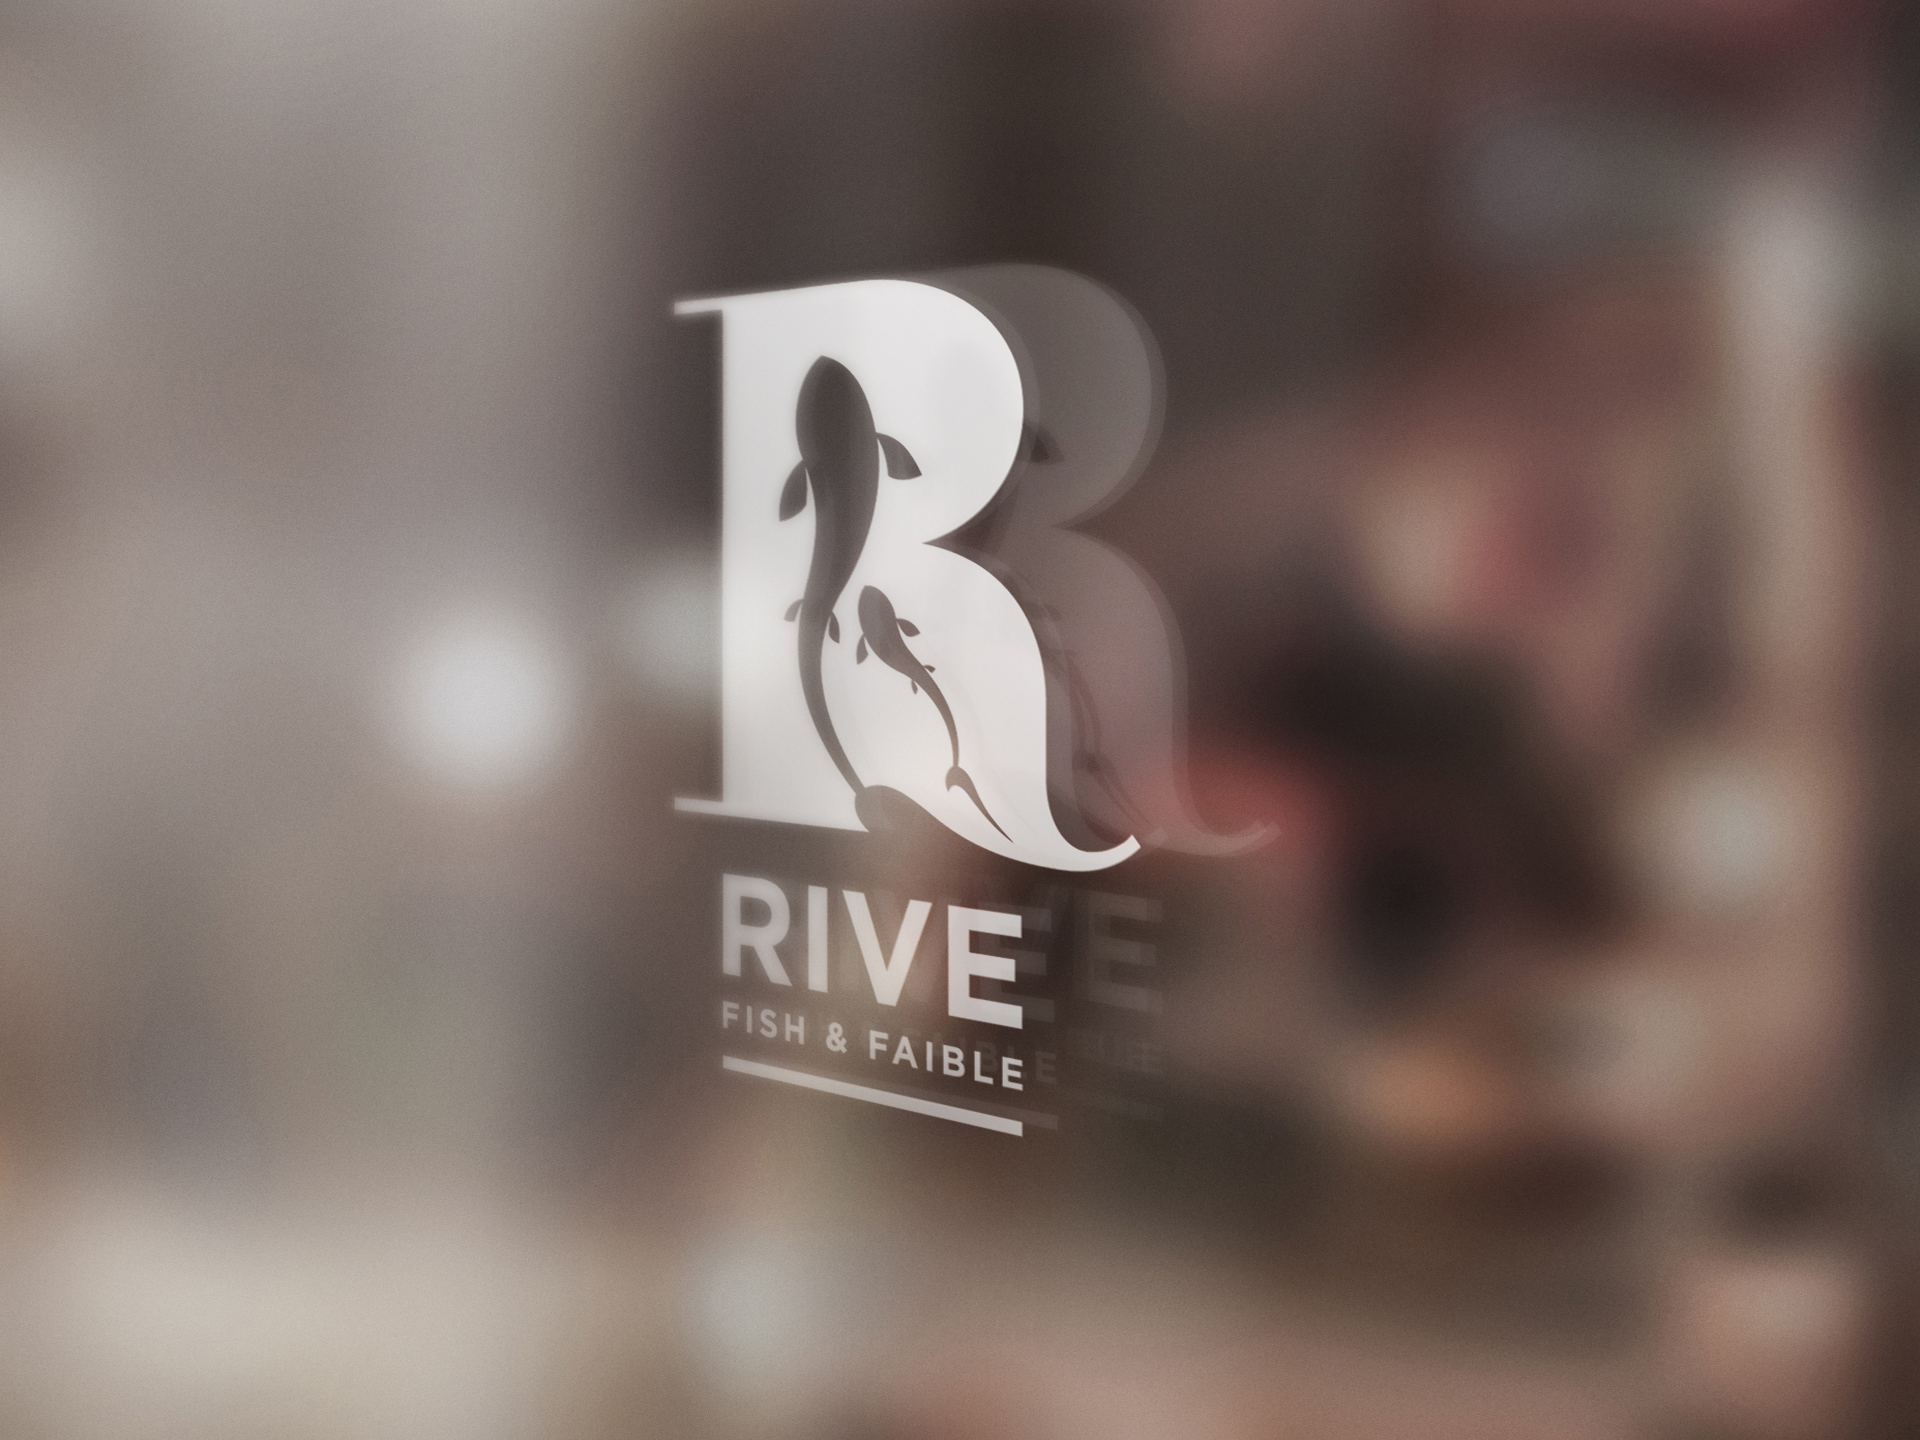 Rive – Fish and Faible (2)